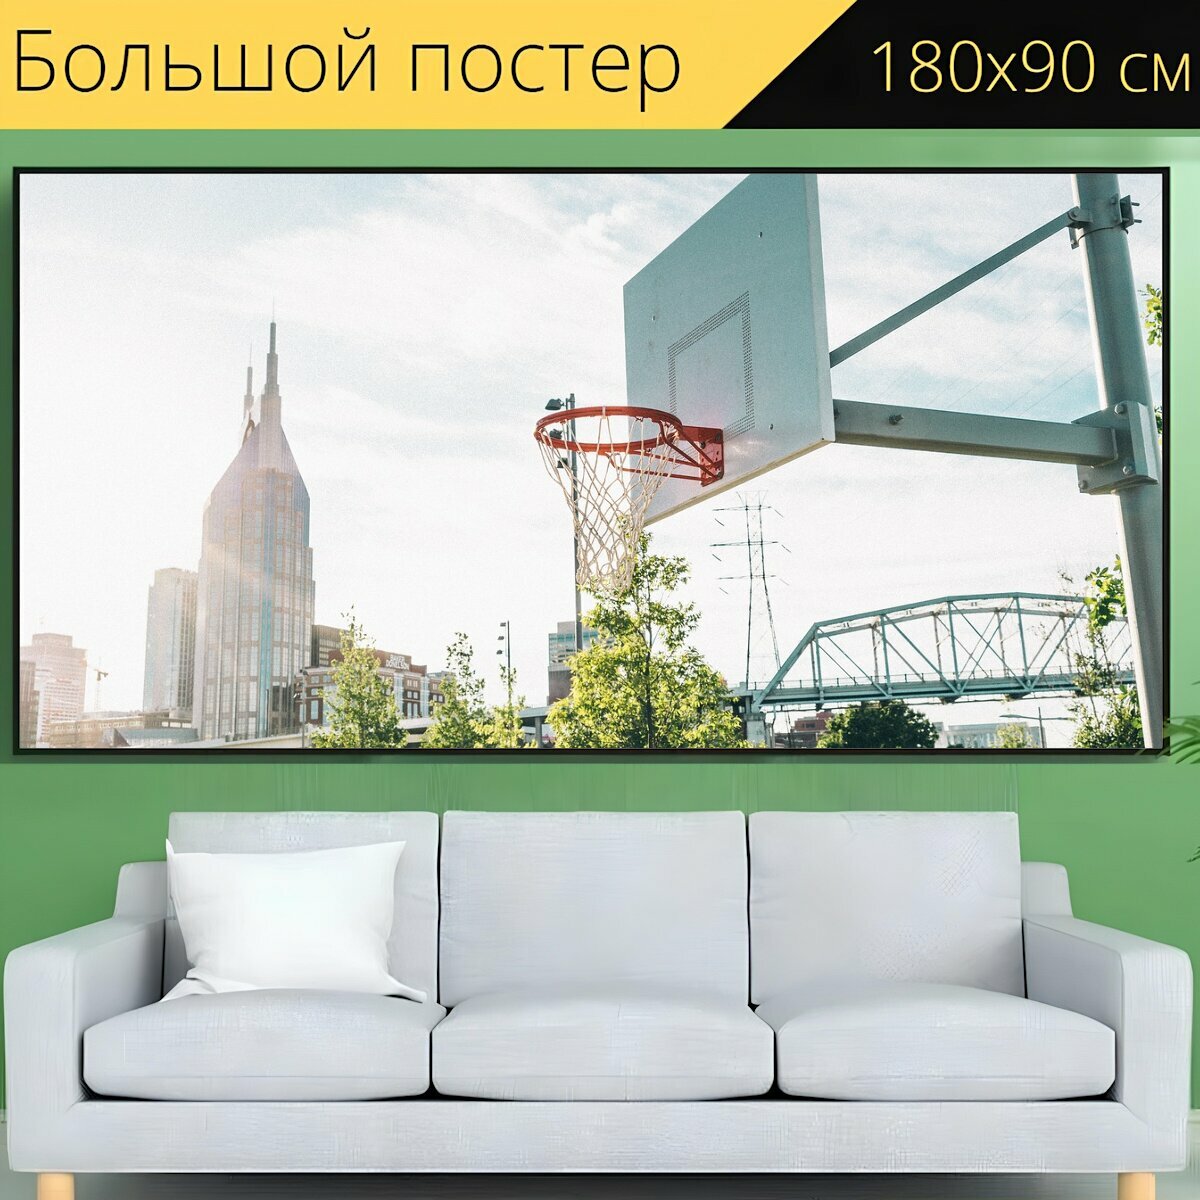 Большой постер "Баскетбол, спорт, игра" 180 x 90 см. для интерьера